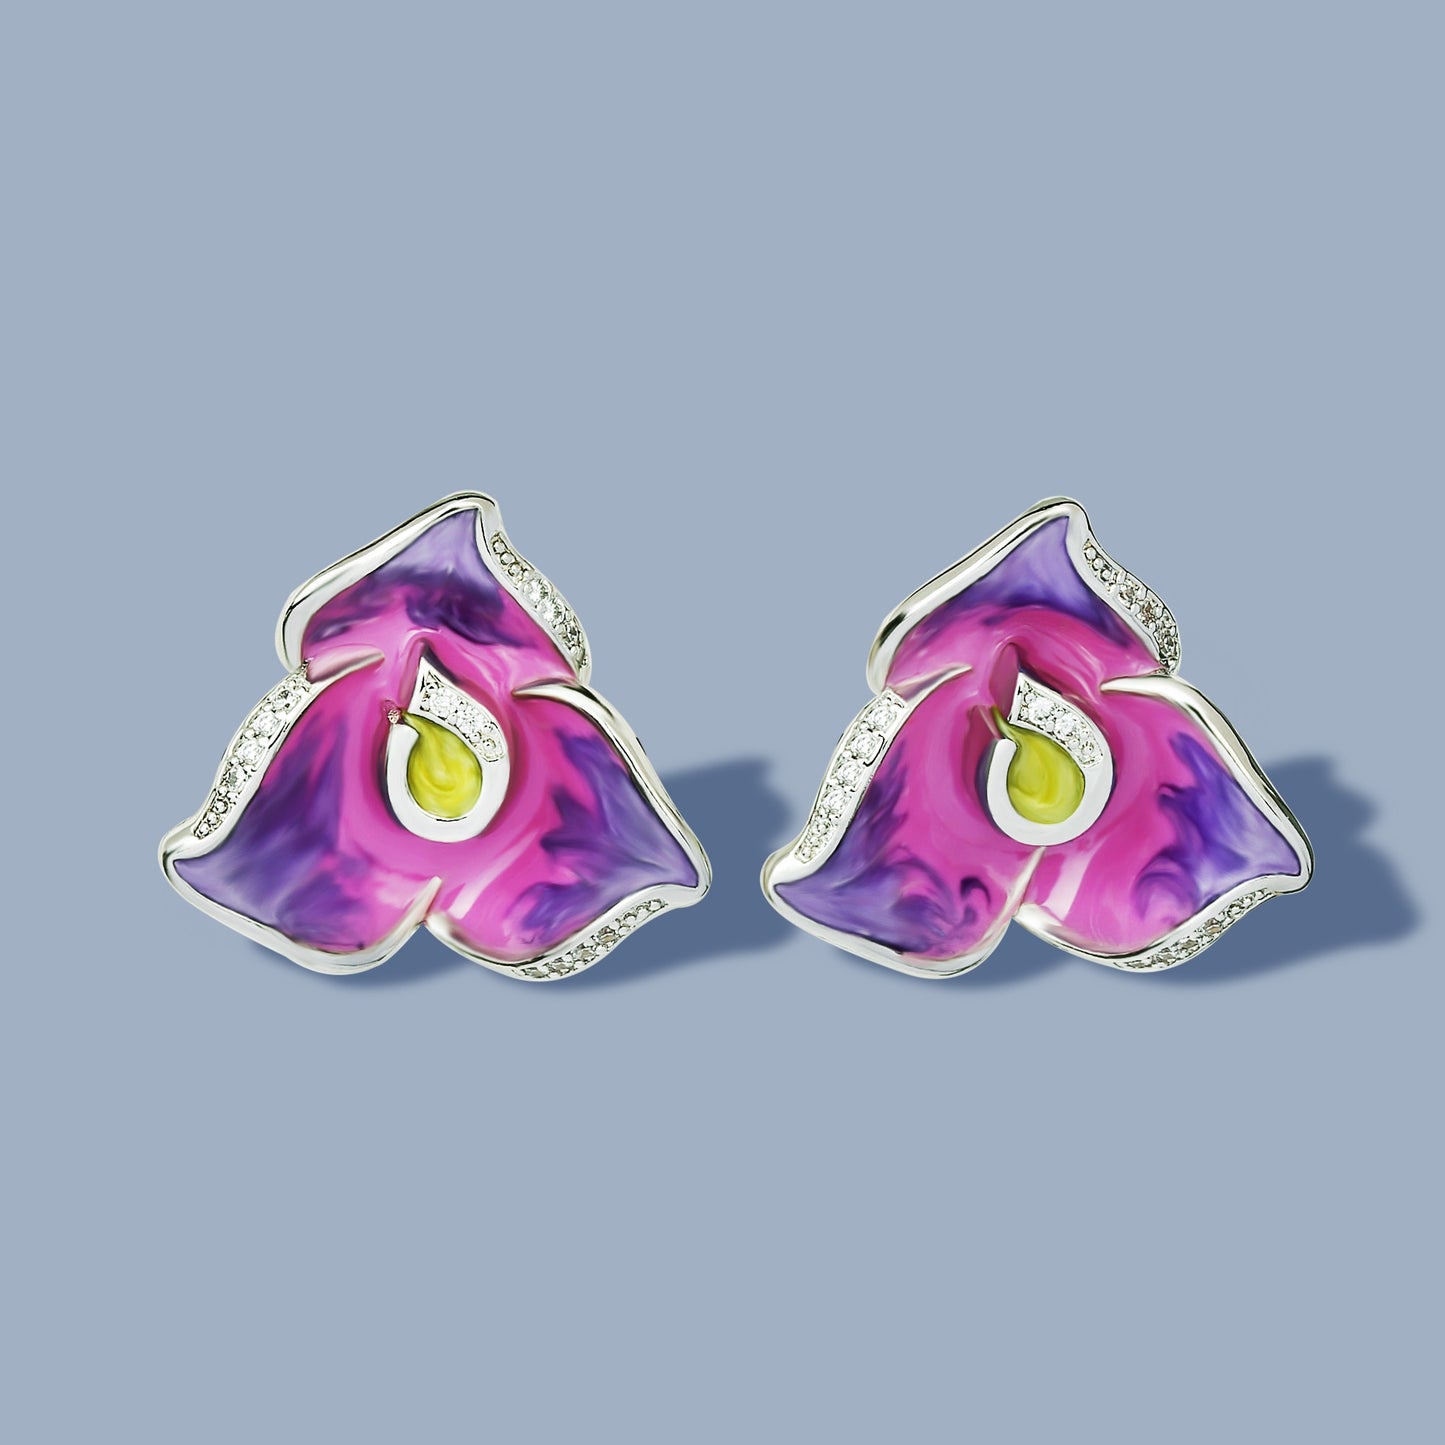 Trendy Jewelry Handmade Enamel Purple Flower Stud Earrings for Women in 925 Silver